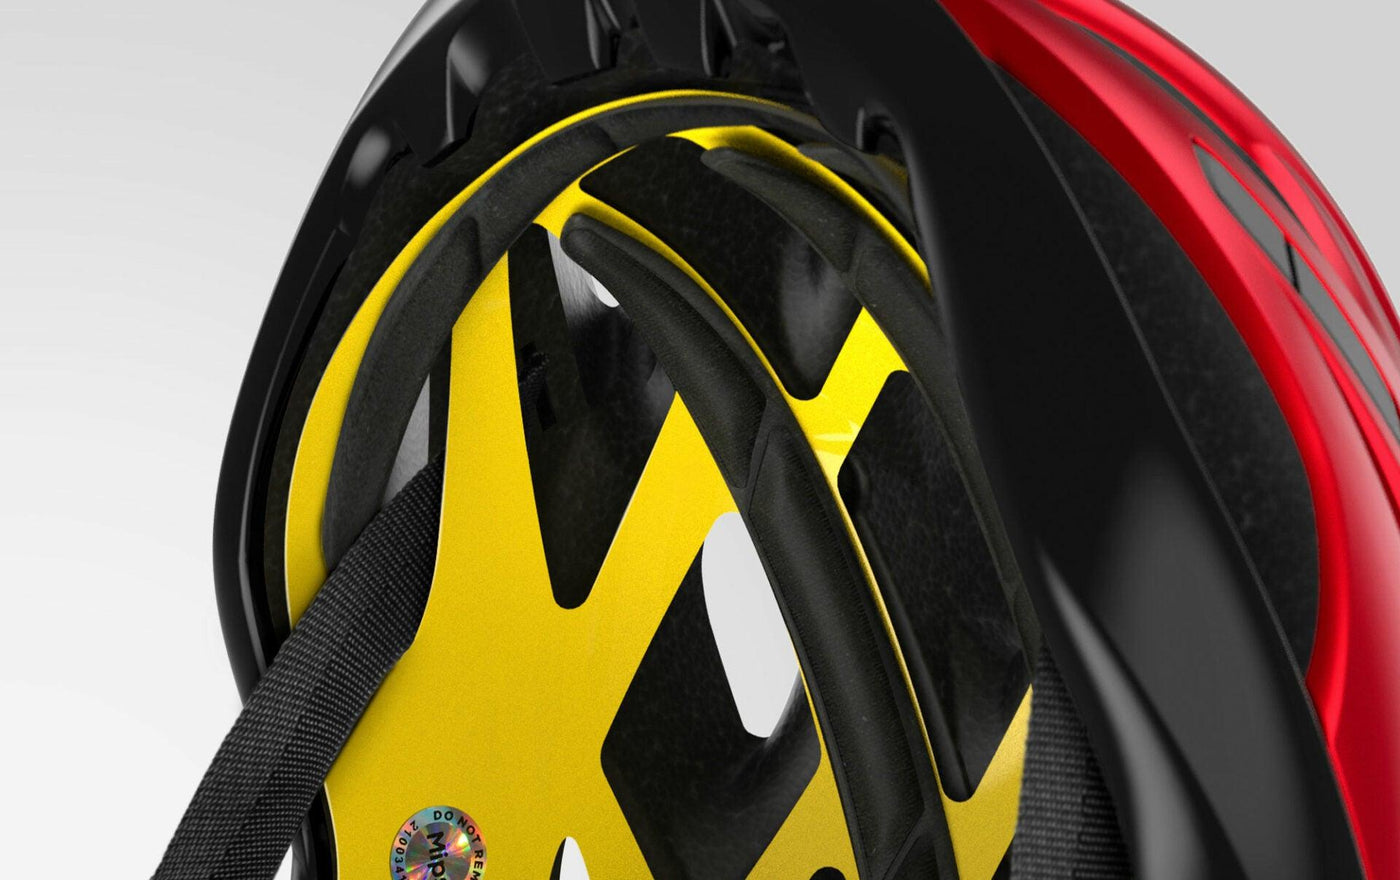 MET Estro MIPS 2022 Helmet - Sprocket & Gear